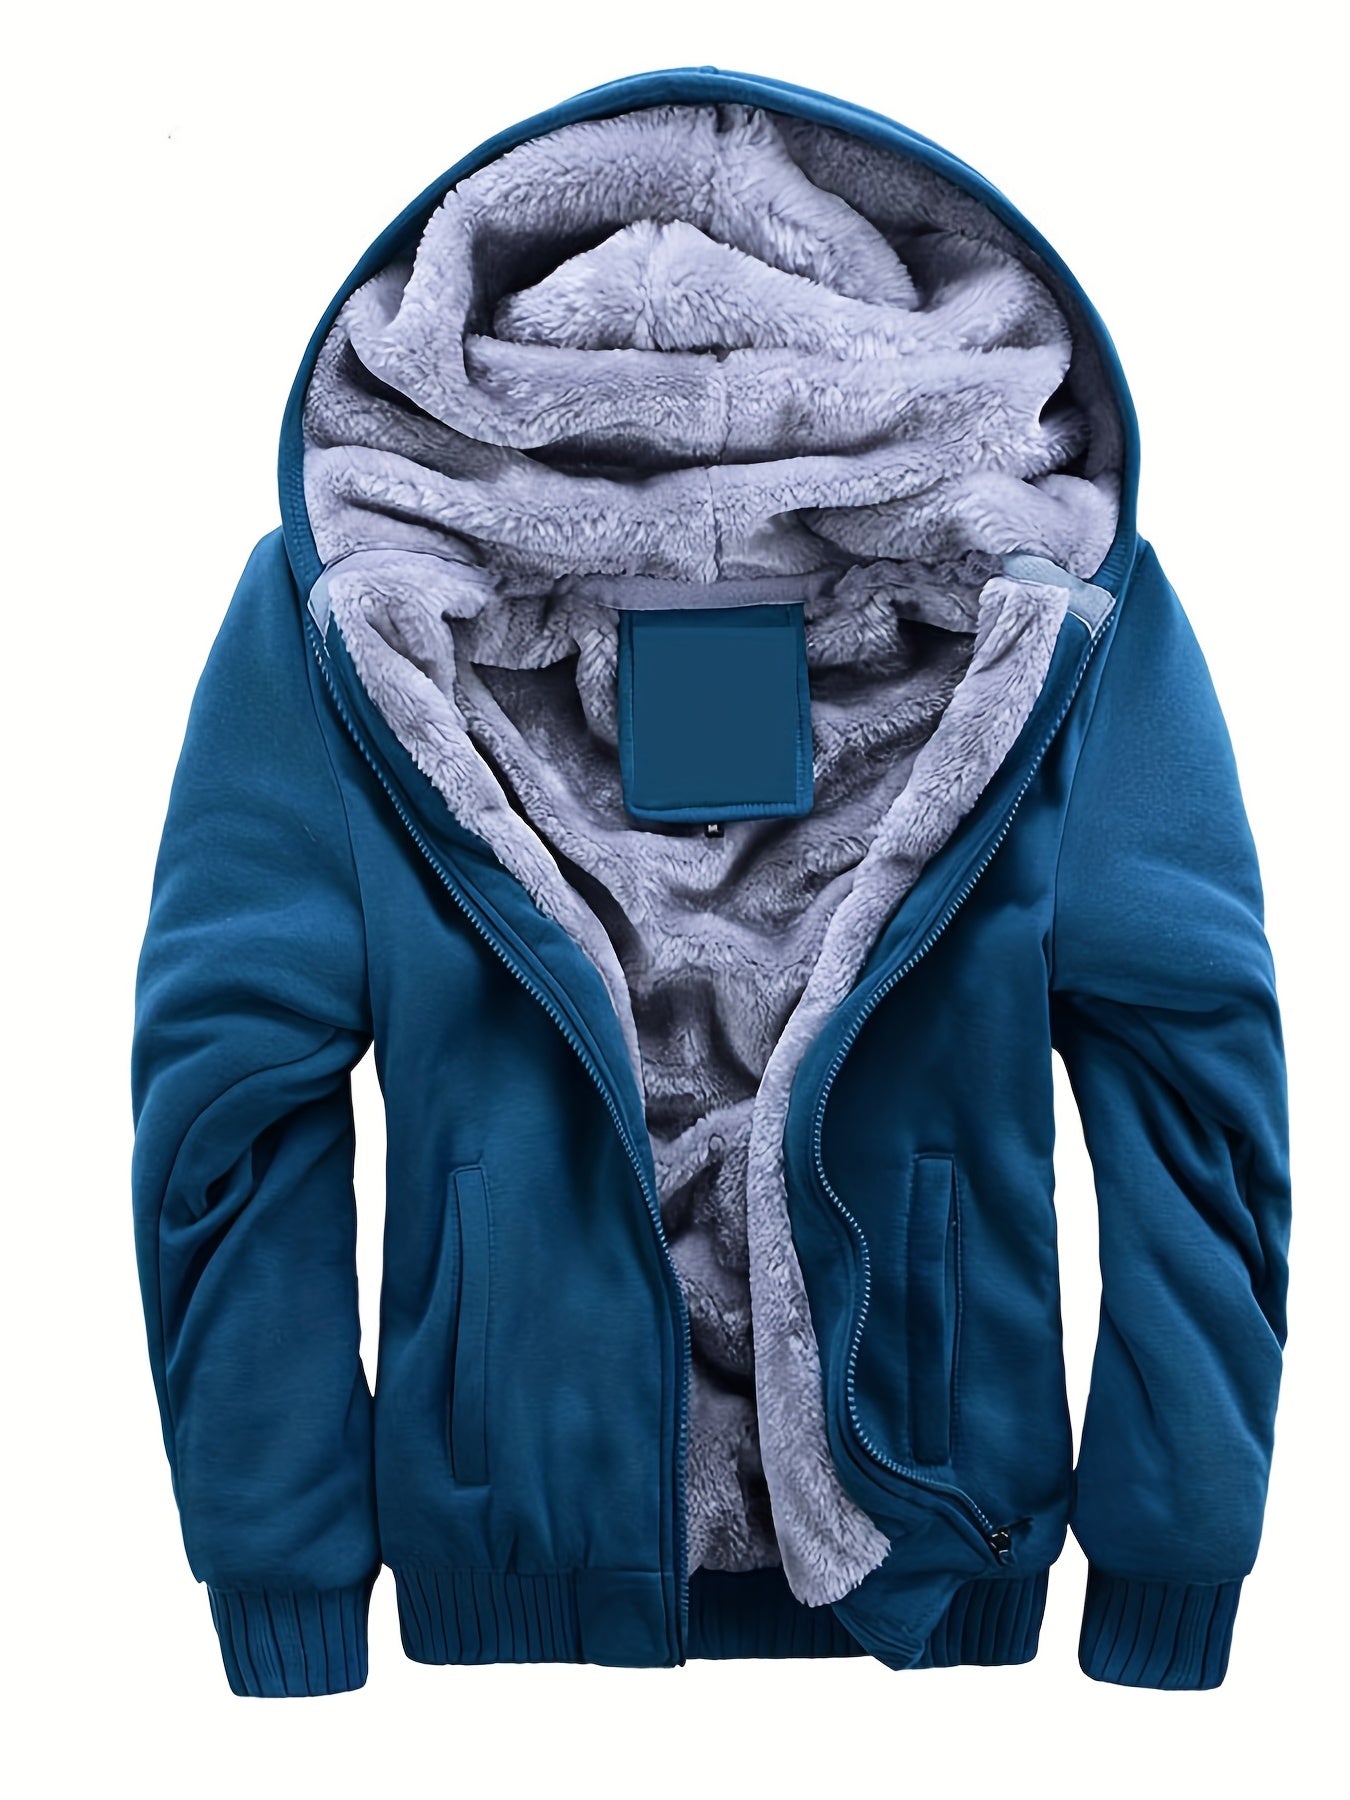 Men's Warm Fleece Hooded Jacket Coat, Warm Thick Zip Up Hoodie For Fall Winter